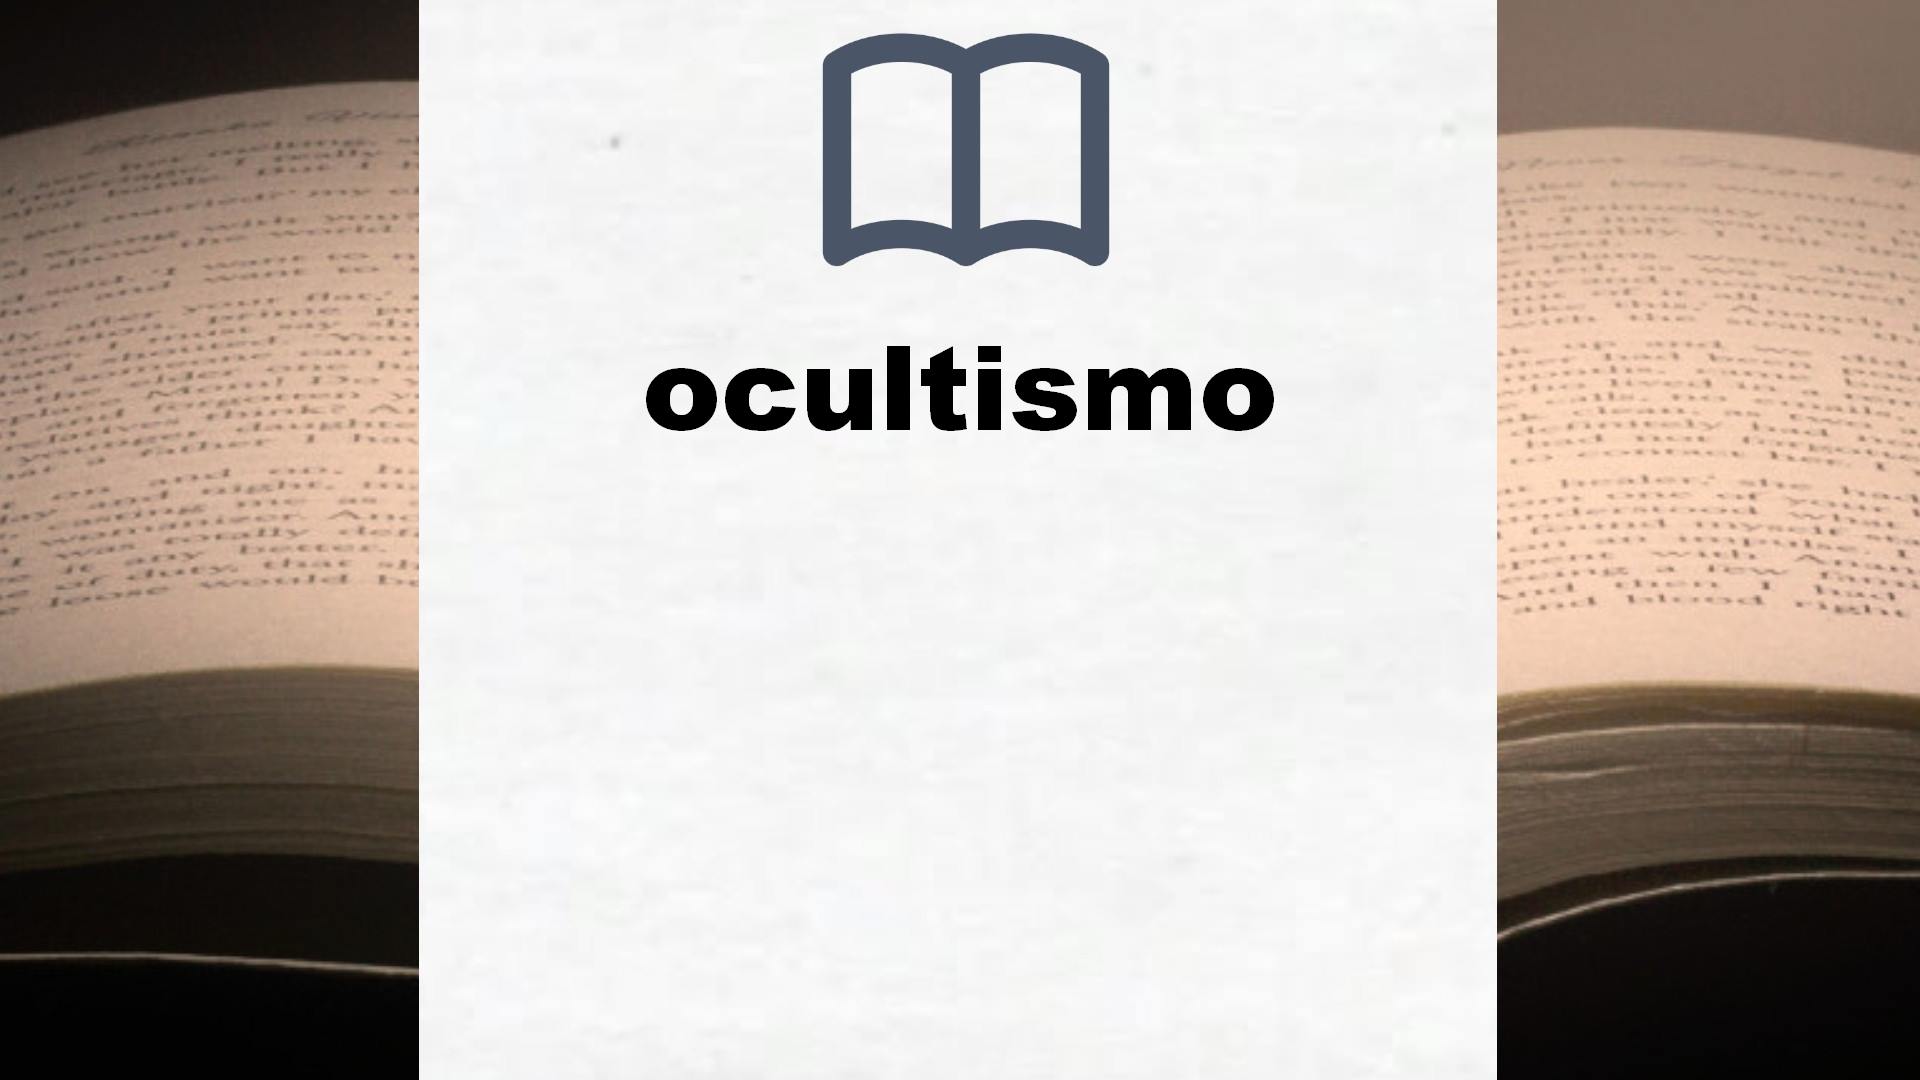 Libros sobre ocultismo